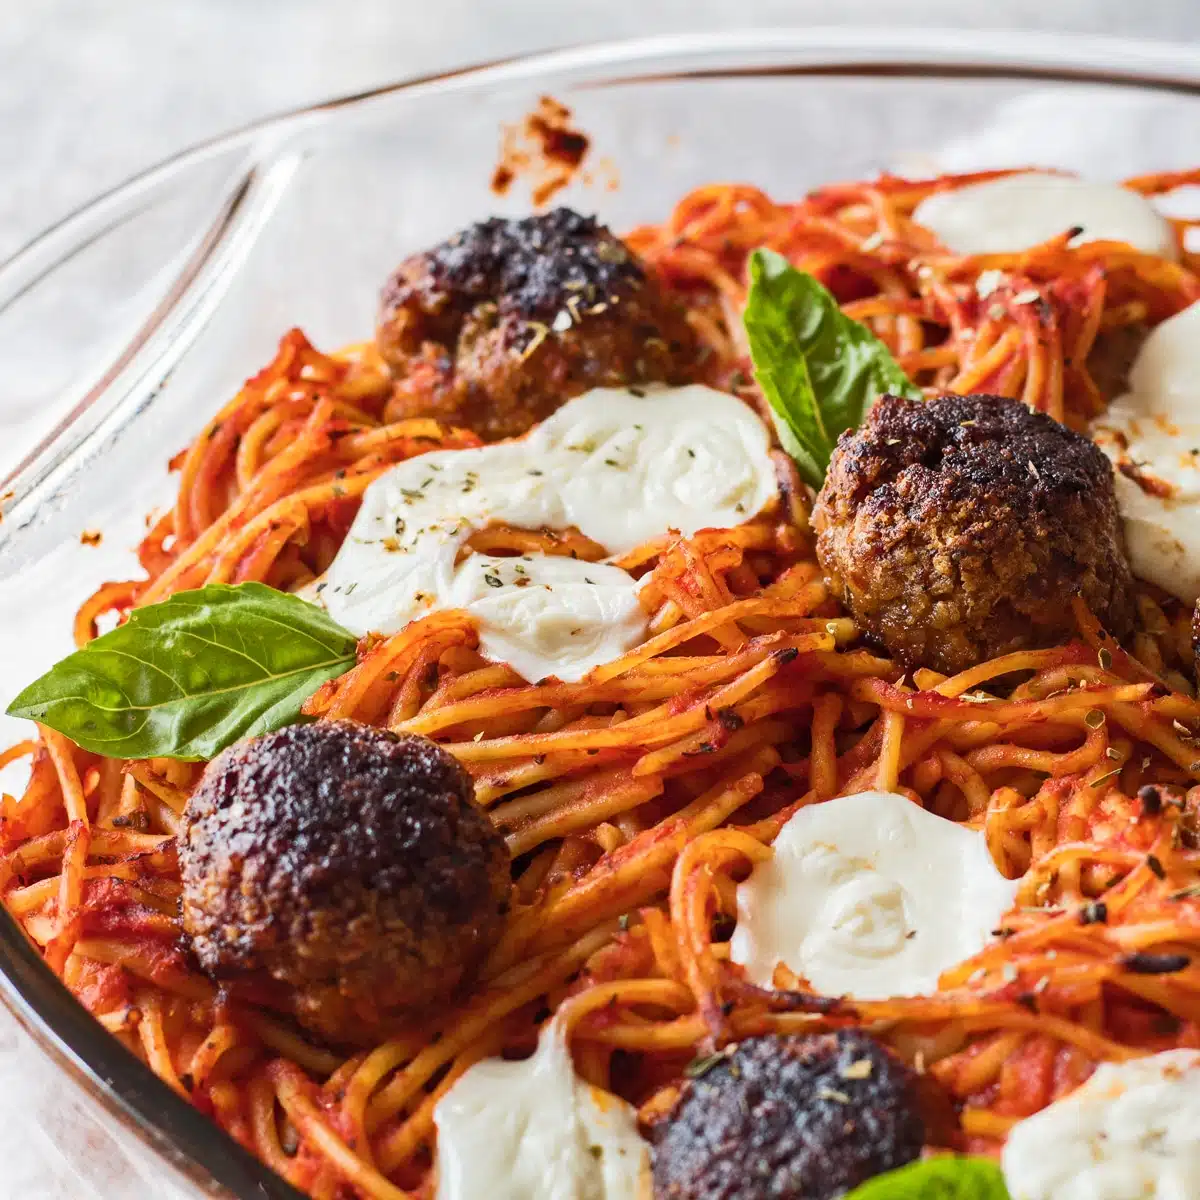 Что подавать со спагетти на ужин изображение, показывающее запеченные спагетти.